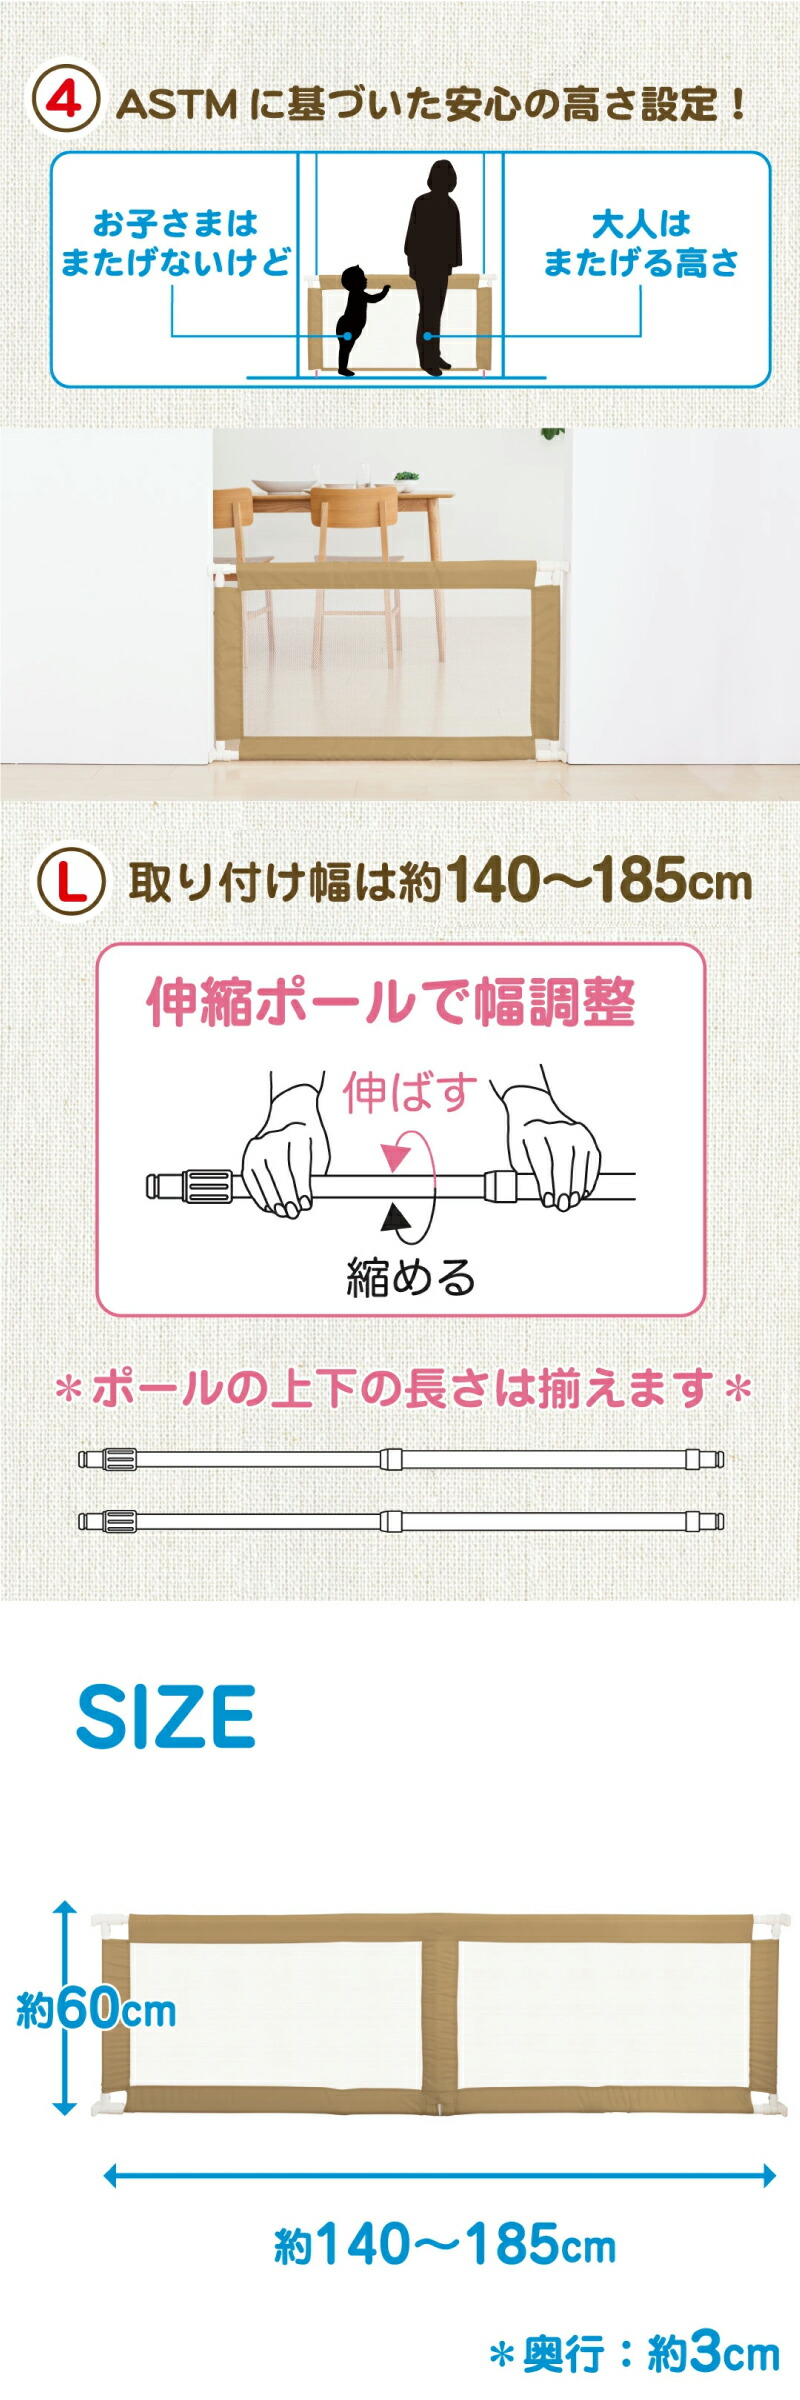 日本育児 ふわふわとおせんぼキッズセーフ Sサイズ(取り付け幅65~90cm)